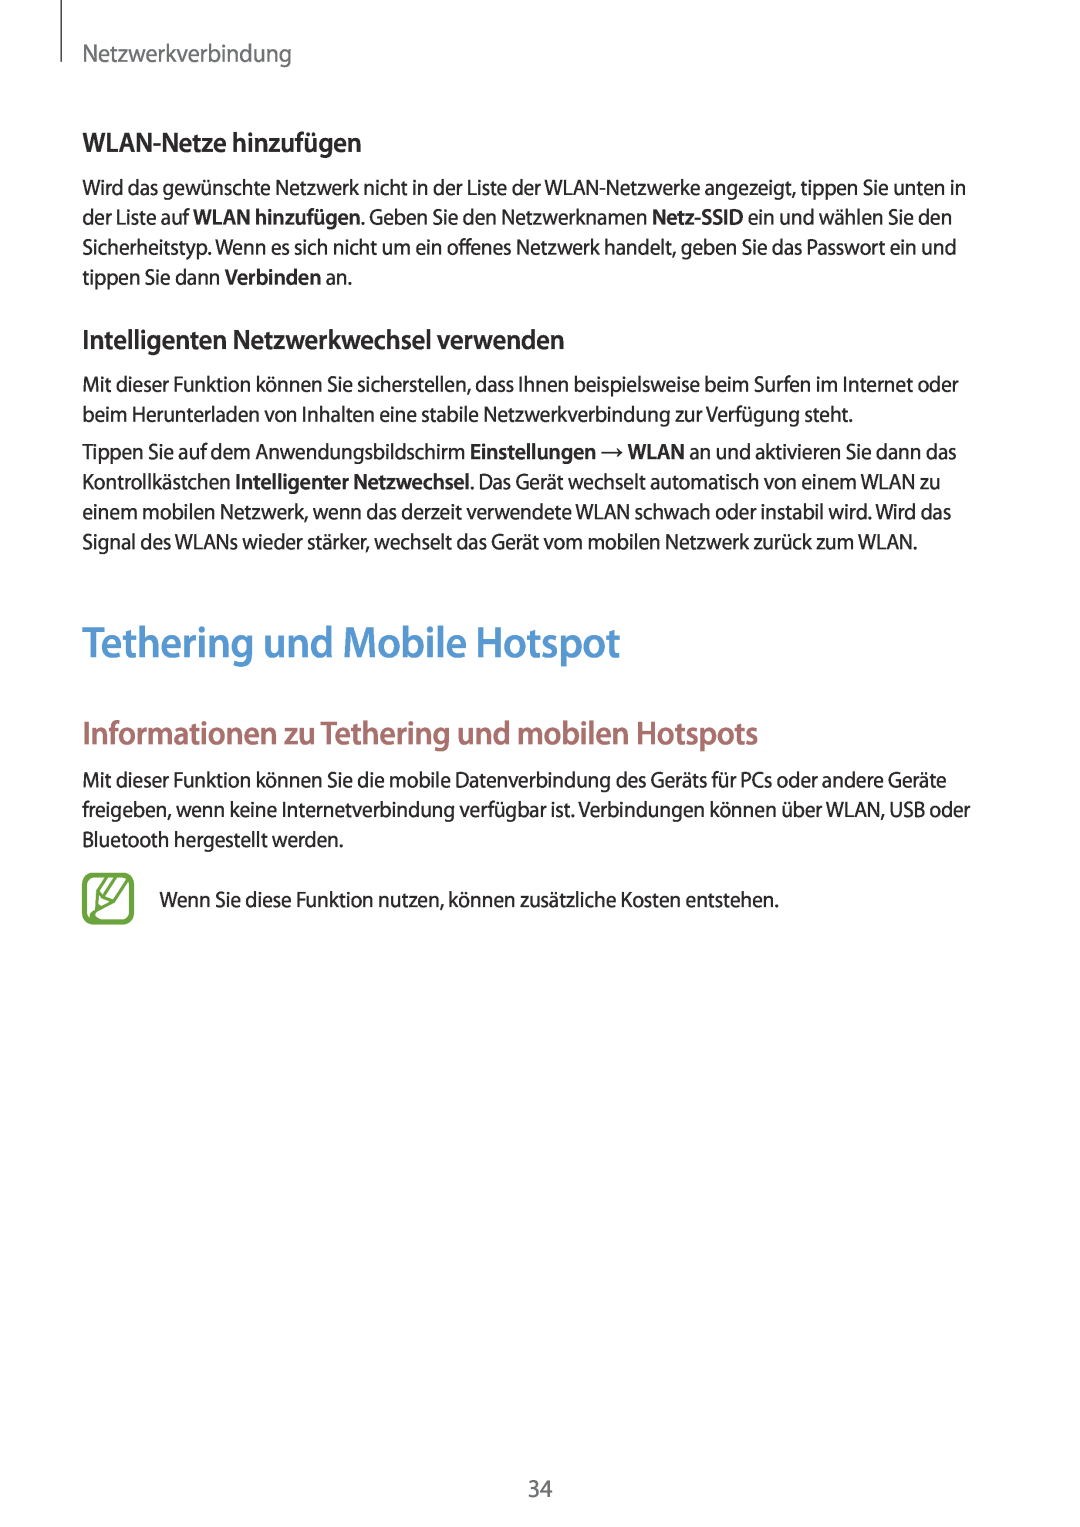 Samsung SM-G110HZWACOS Tethering und Mobile Hotspot, Informationen zu Tethering und mobilen Hotspots, Netzwerkverbindung 